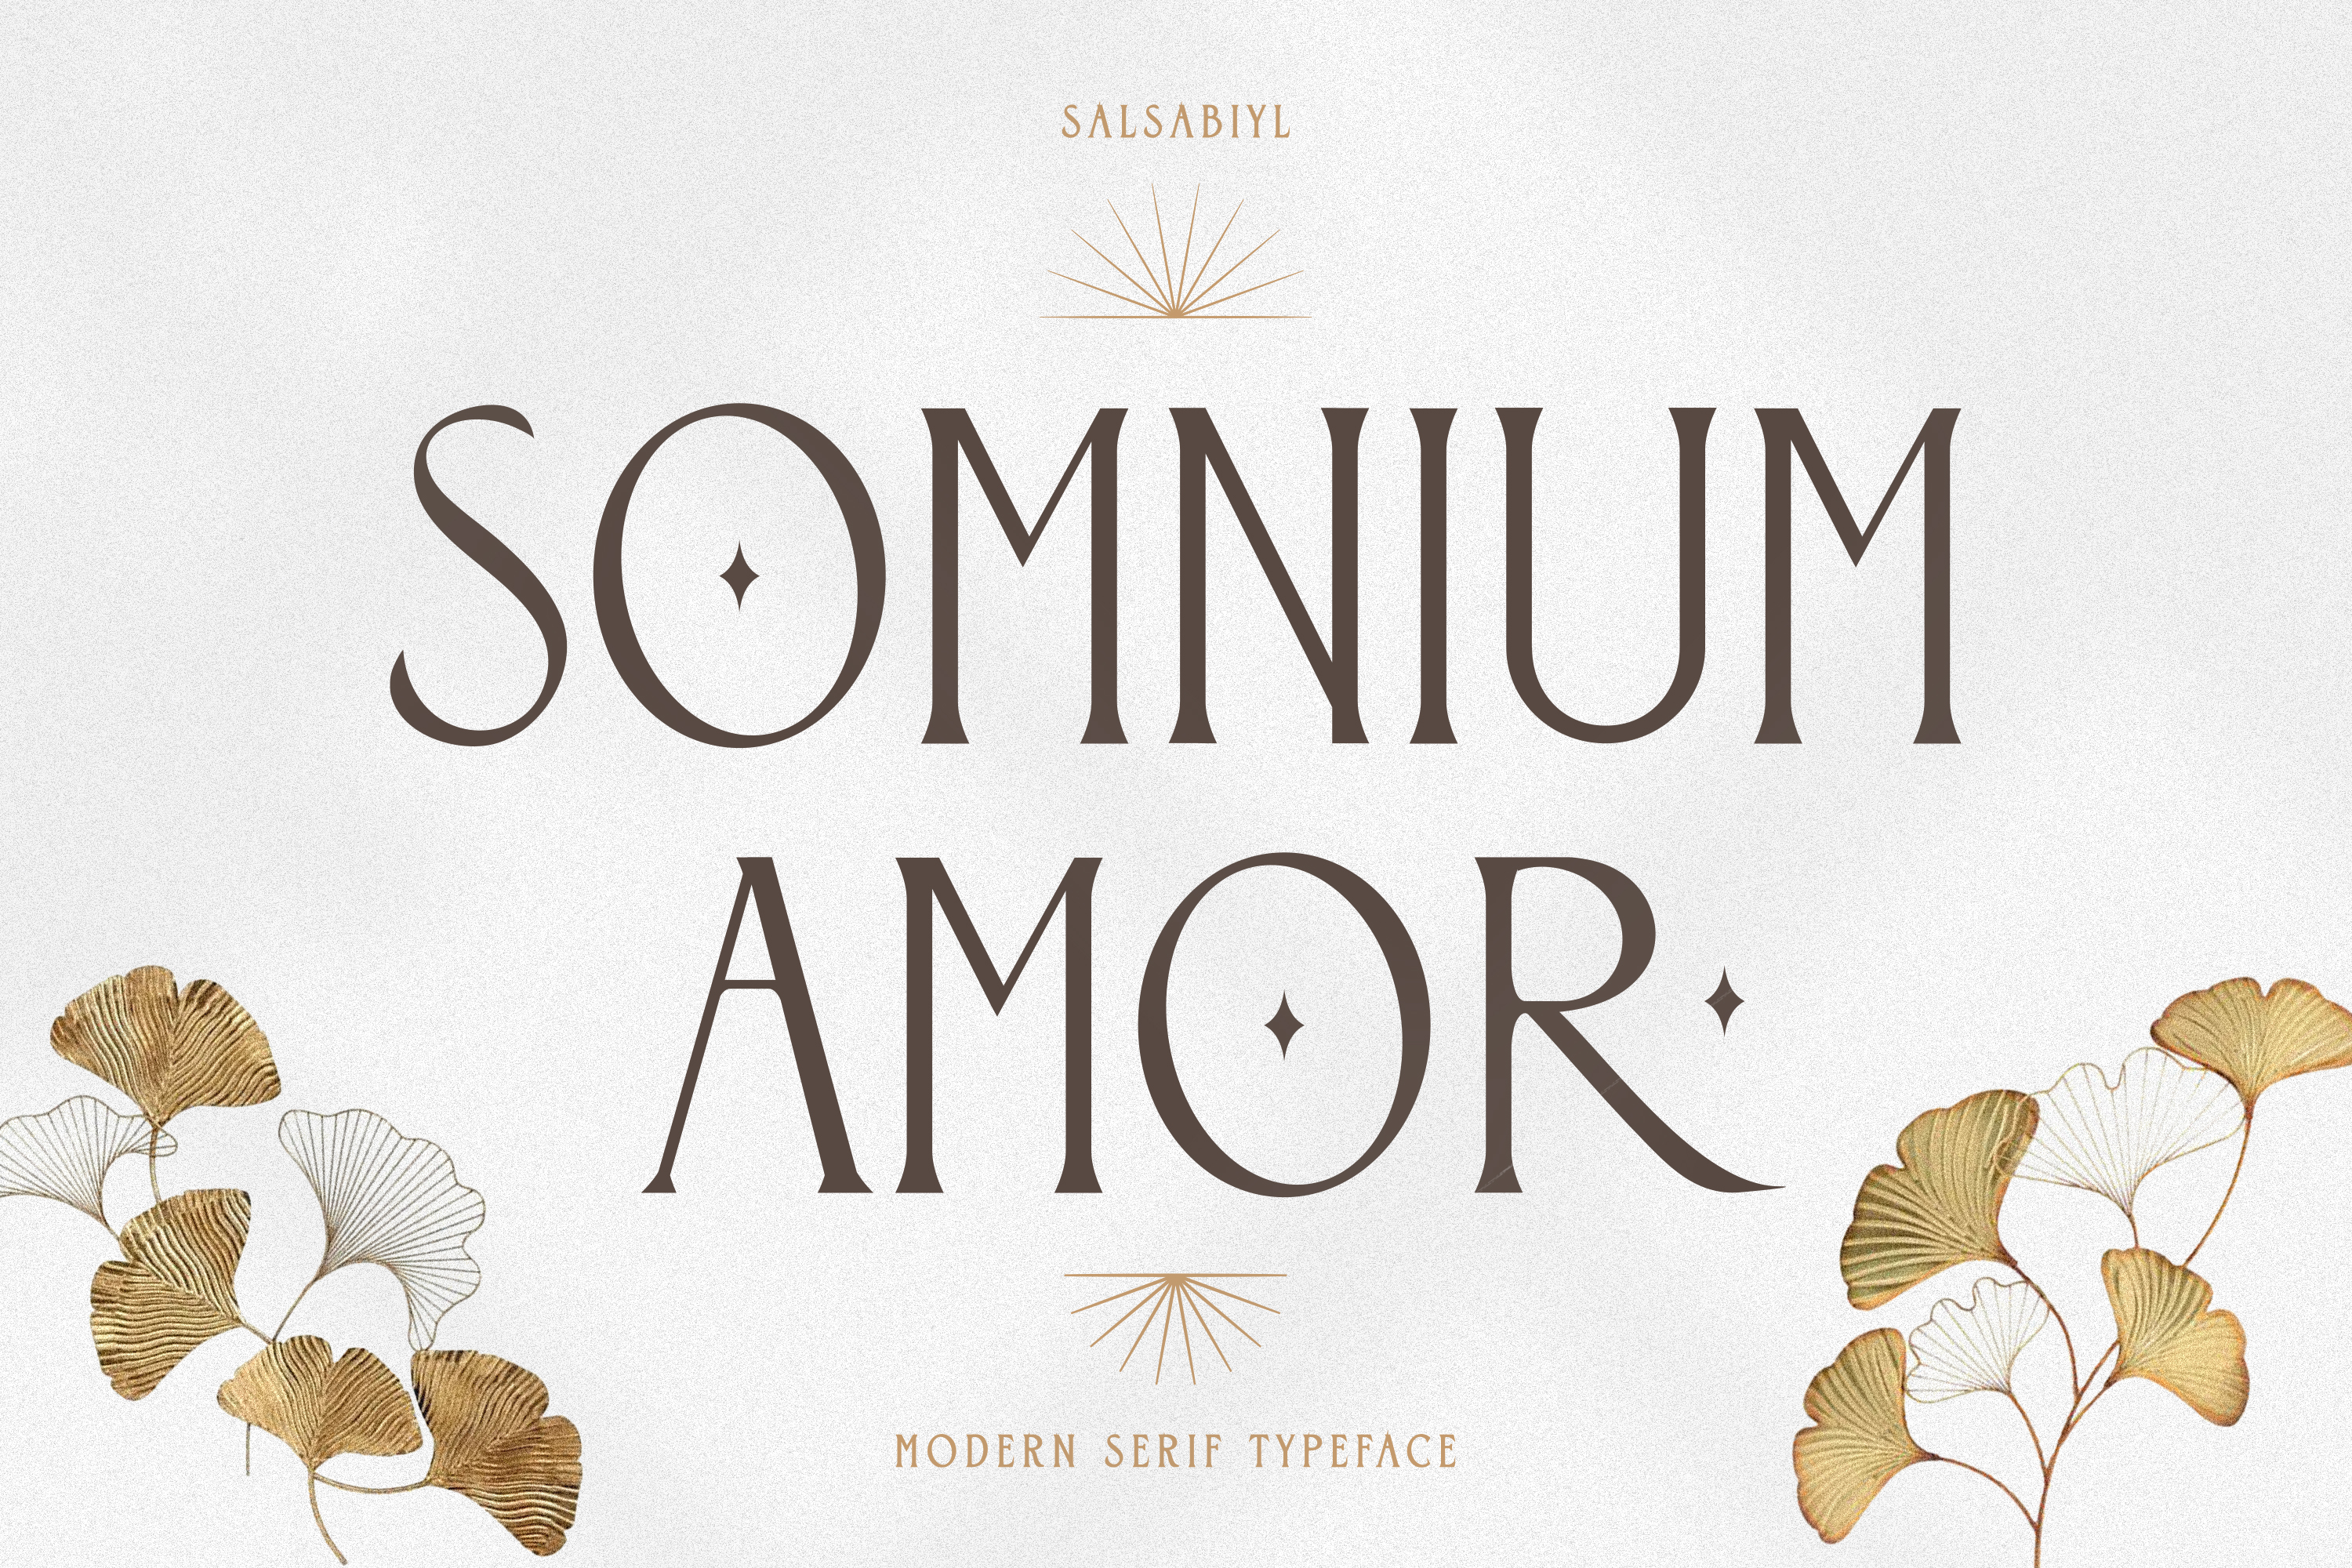 Somnium Amor